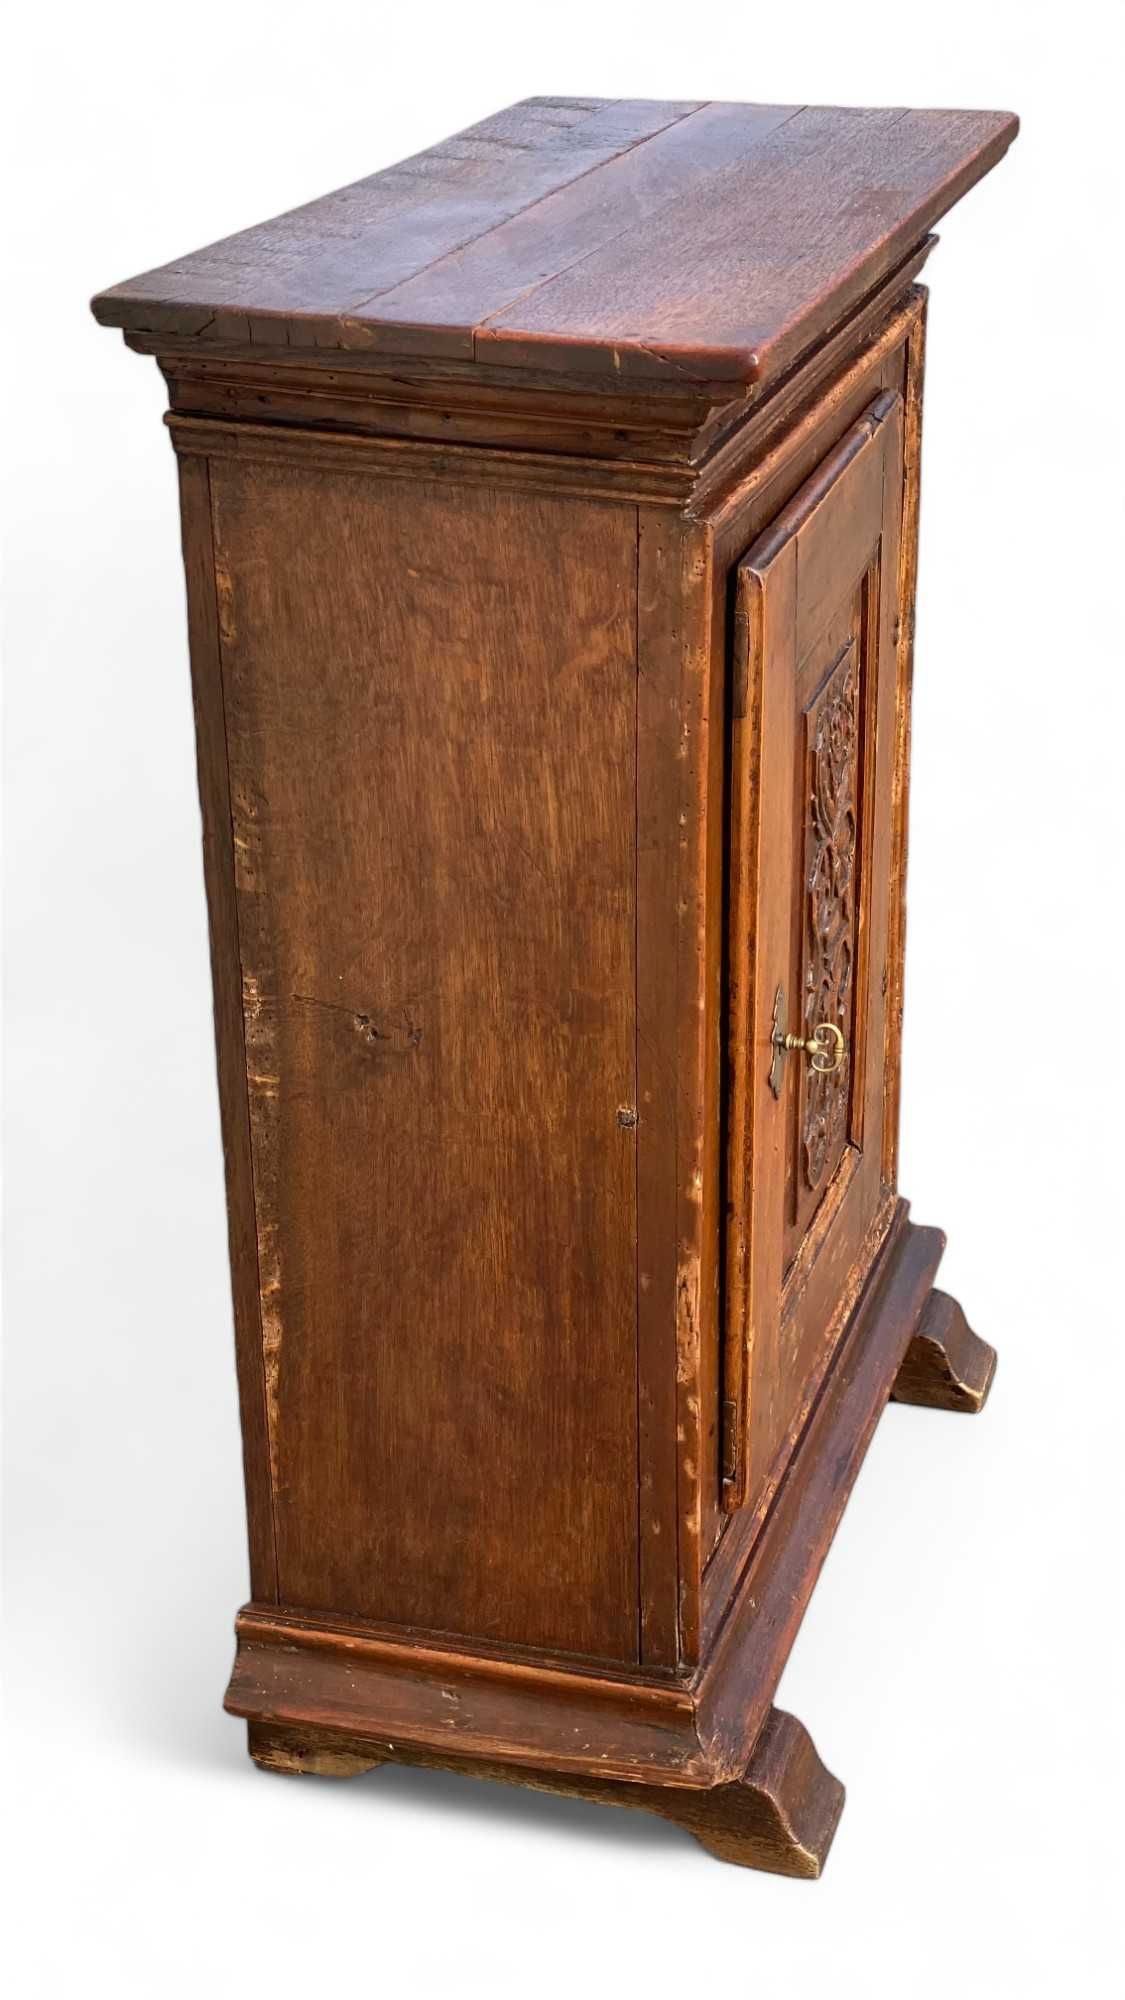 Mała stara szafka drewniana, zdobiona, stylowa komoda